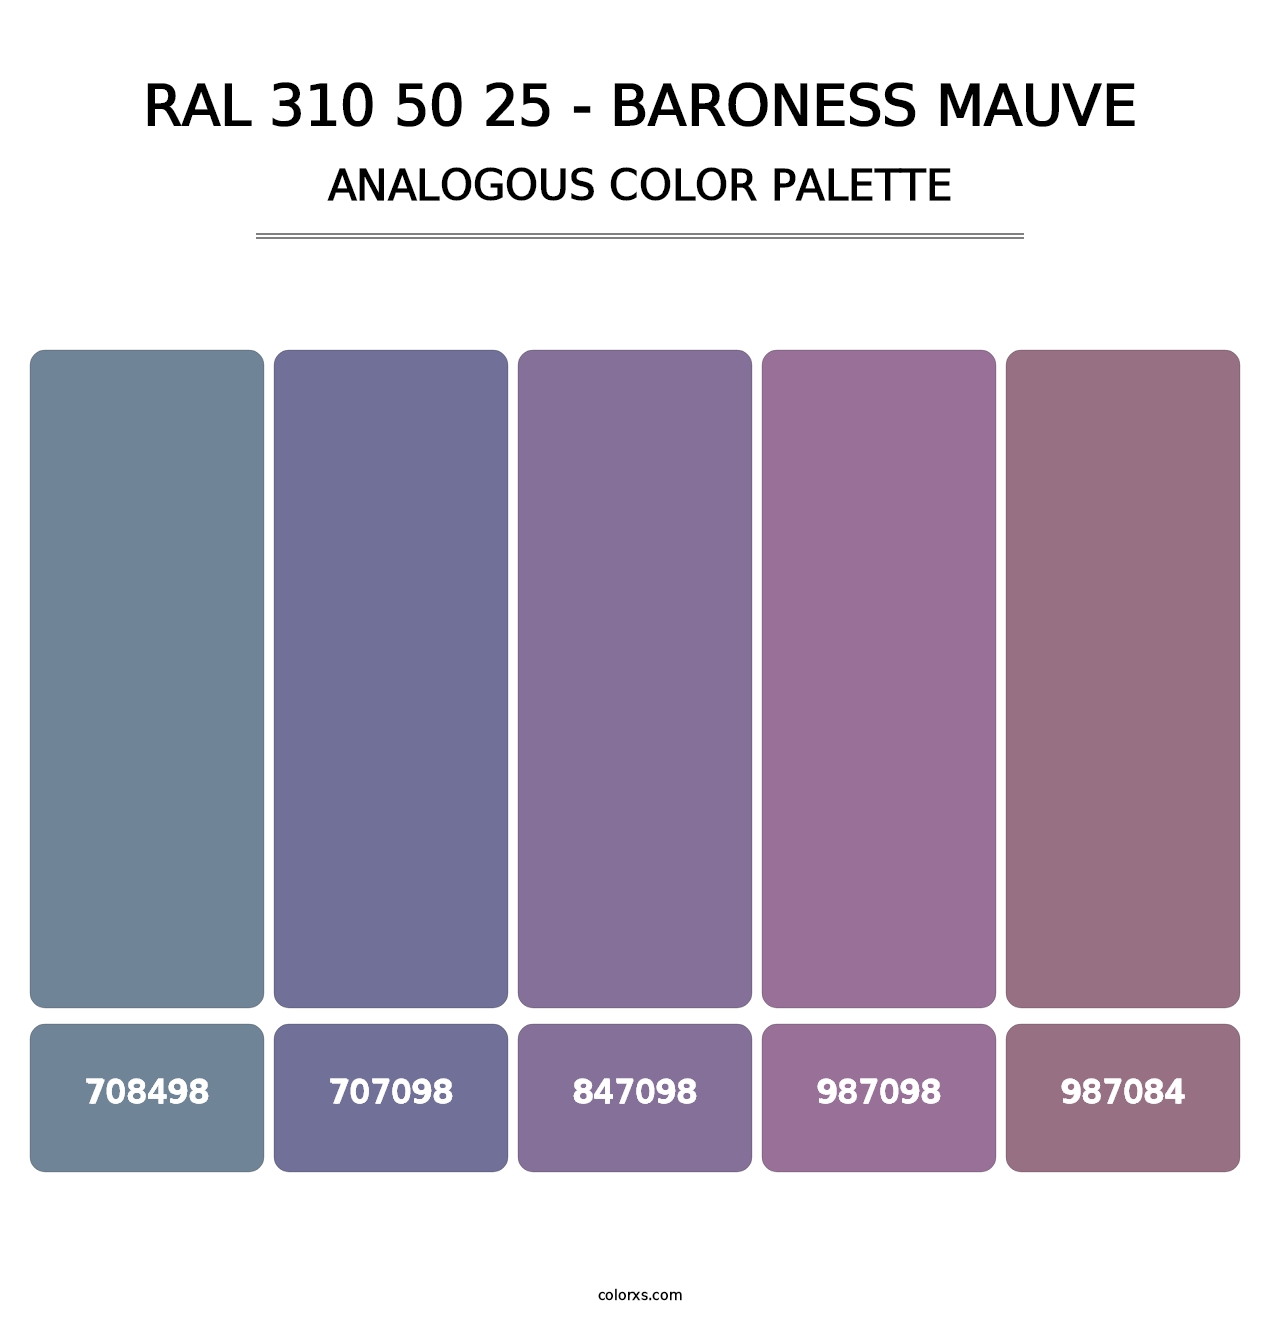 RAL 310 50 25 - Baroness Mauve - Analogous Color Palette